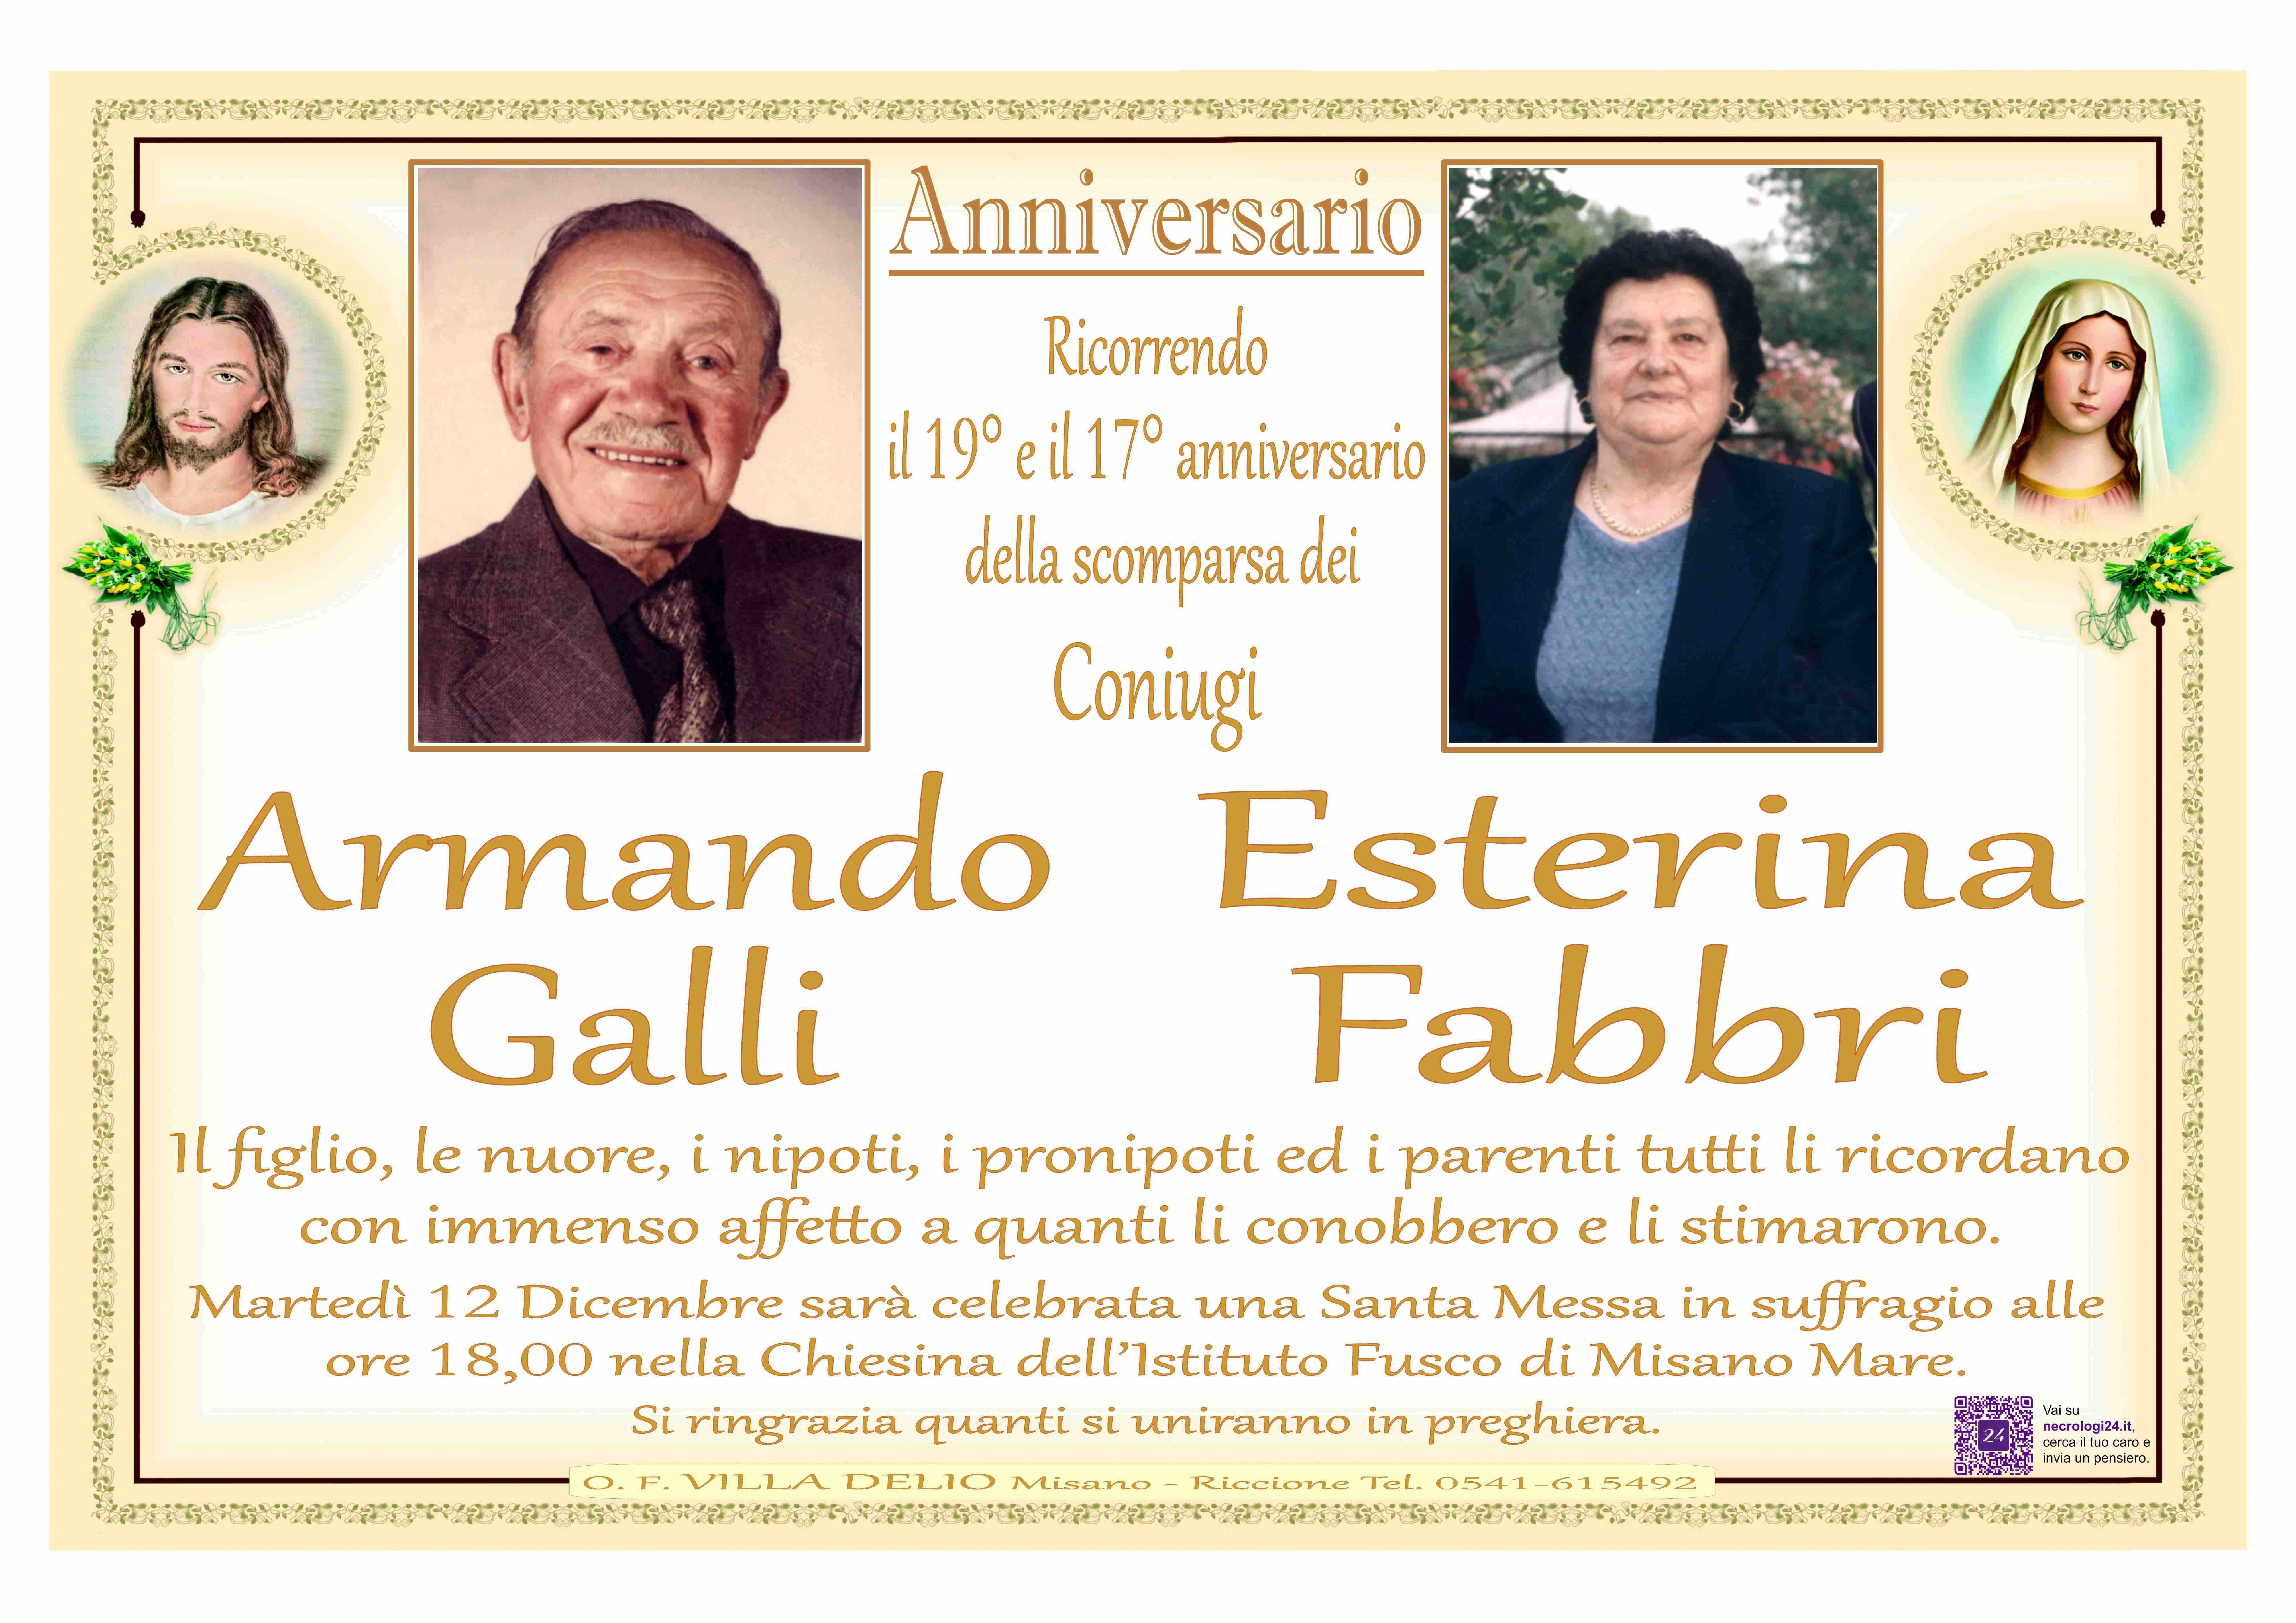 Armando Galli e Esterina Fabbri